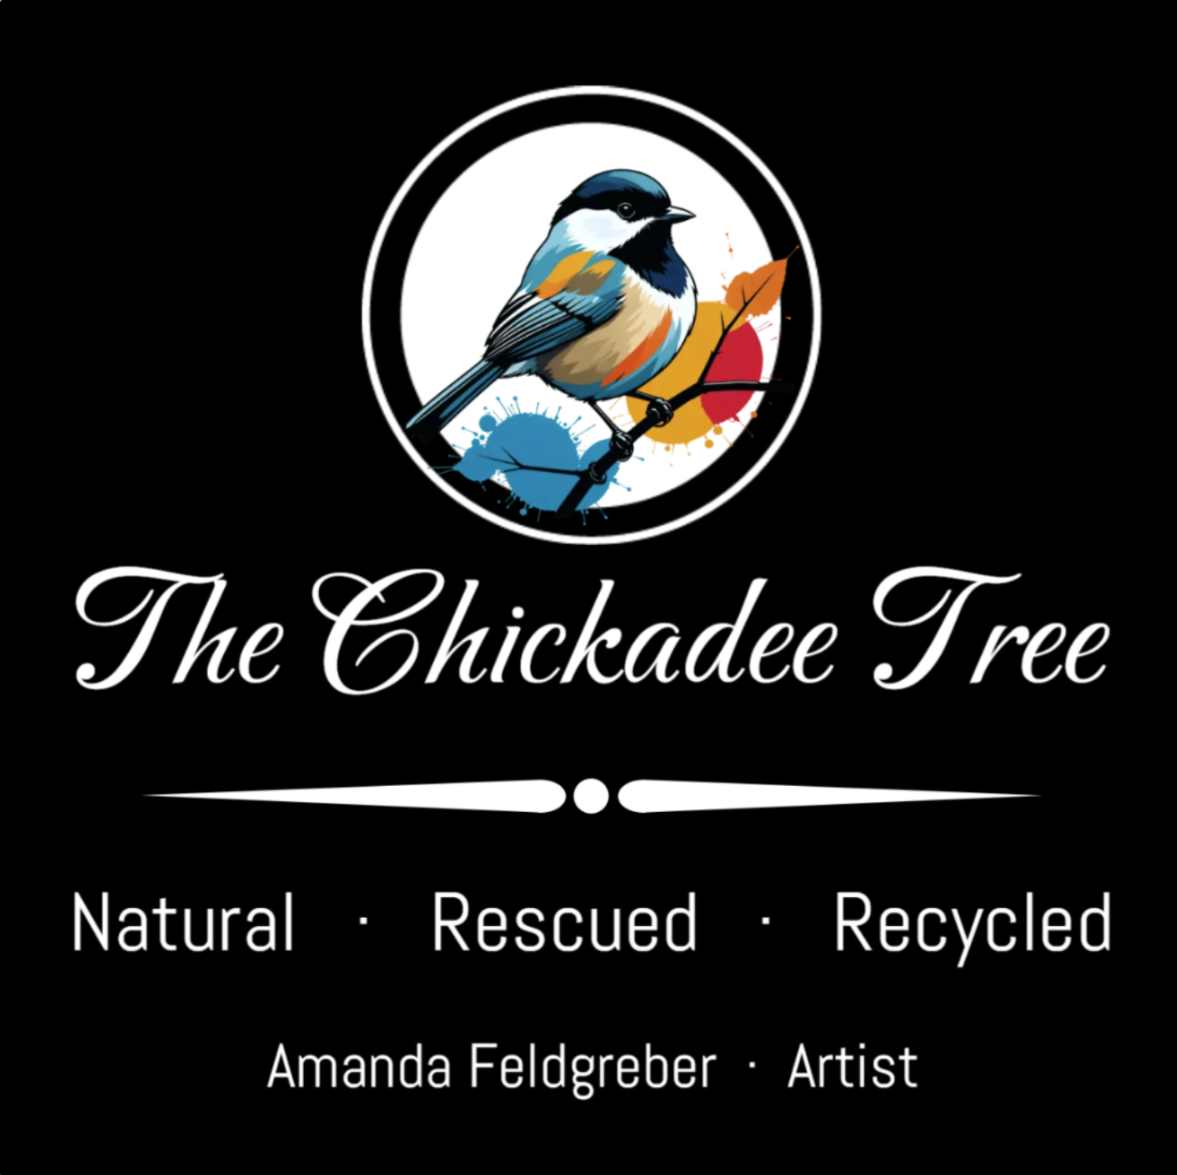 The Chickadee Tree